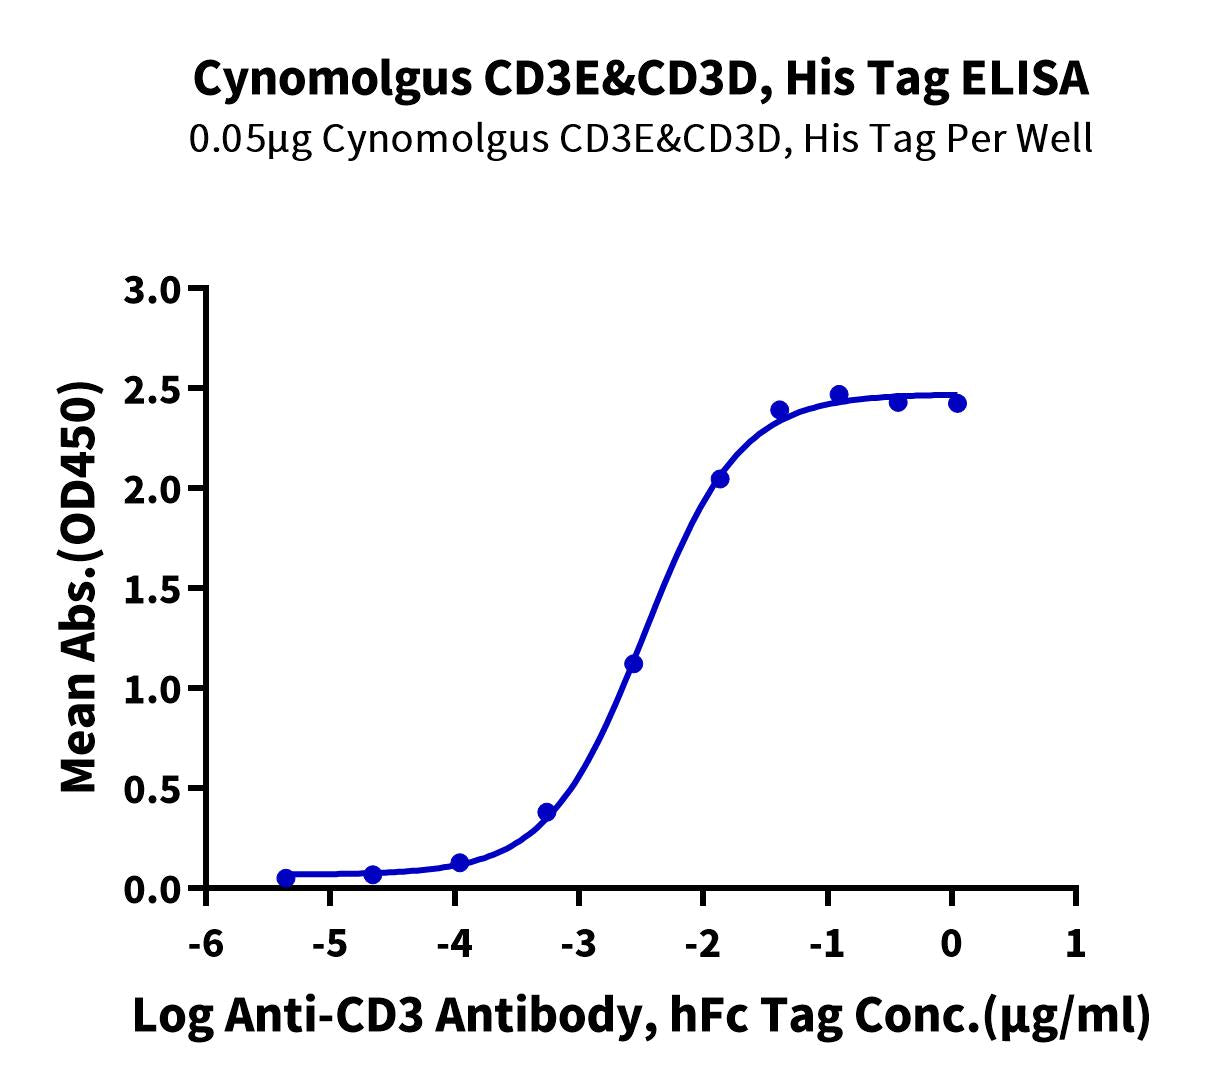 Cynomolgus CD3E&CD3D/CD3 epsilon&CD3 delta Protein (CD3-CM101)